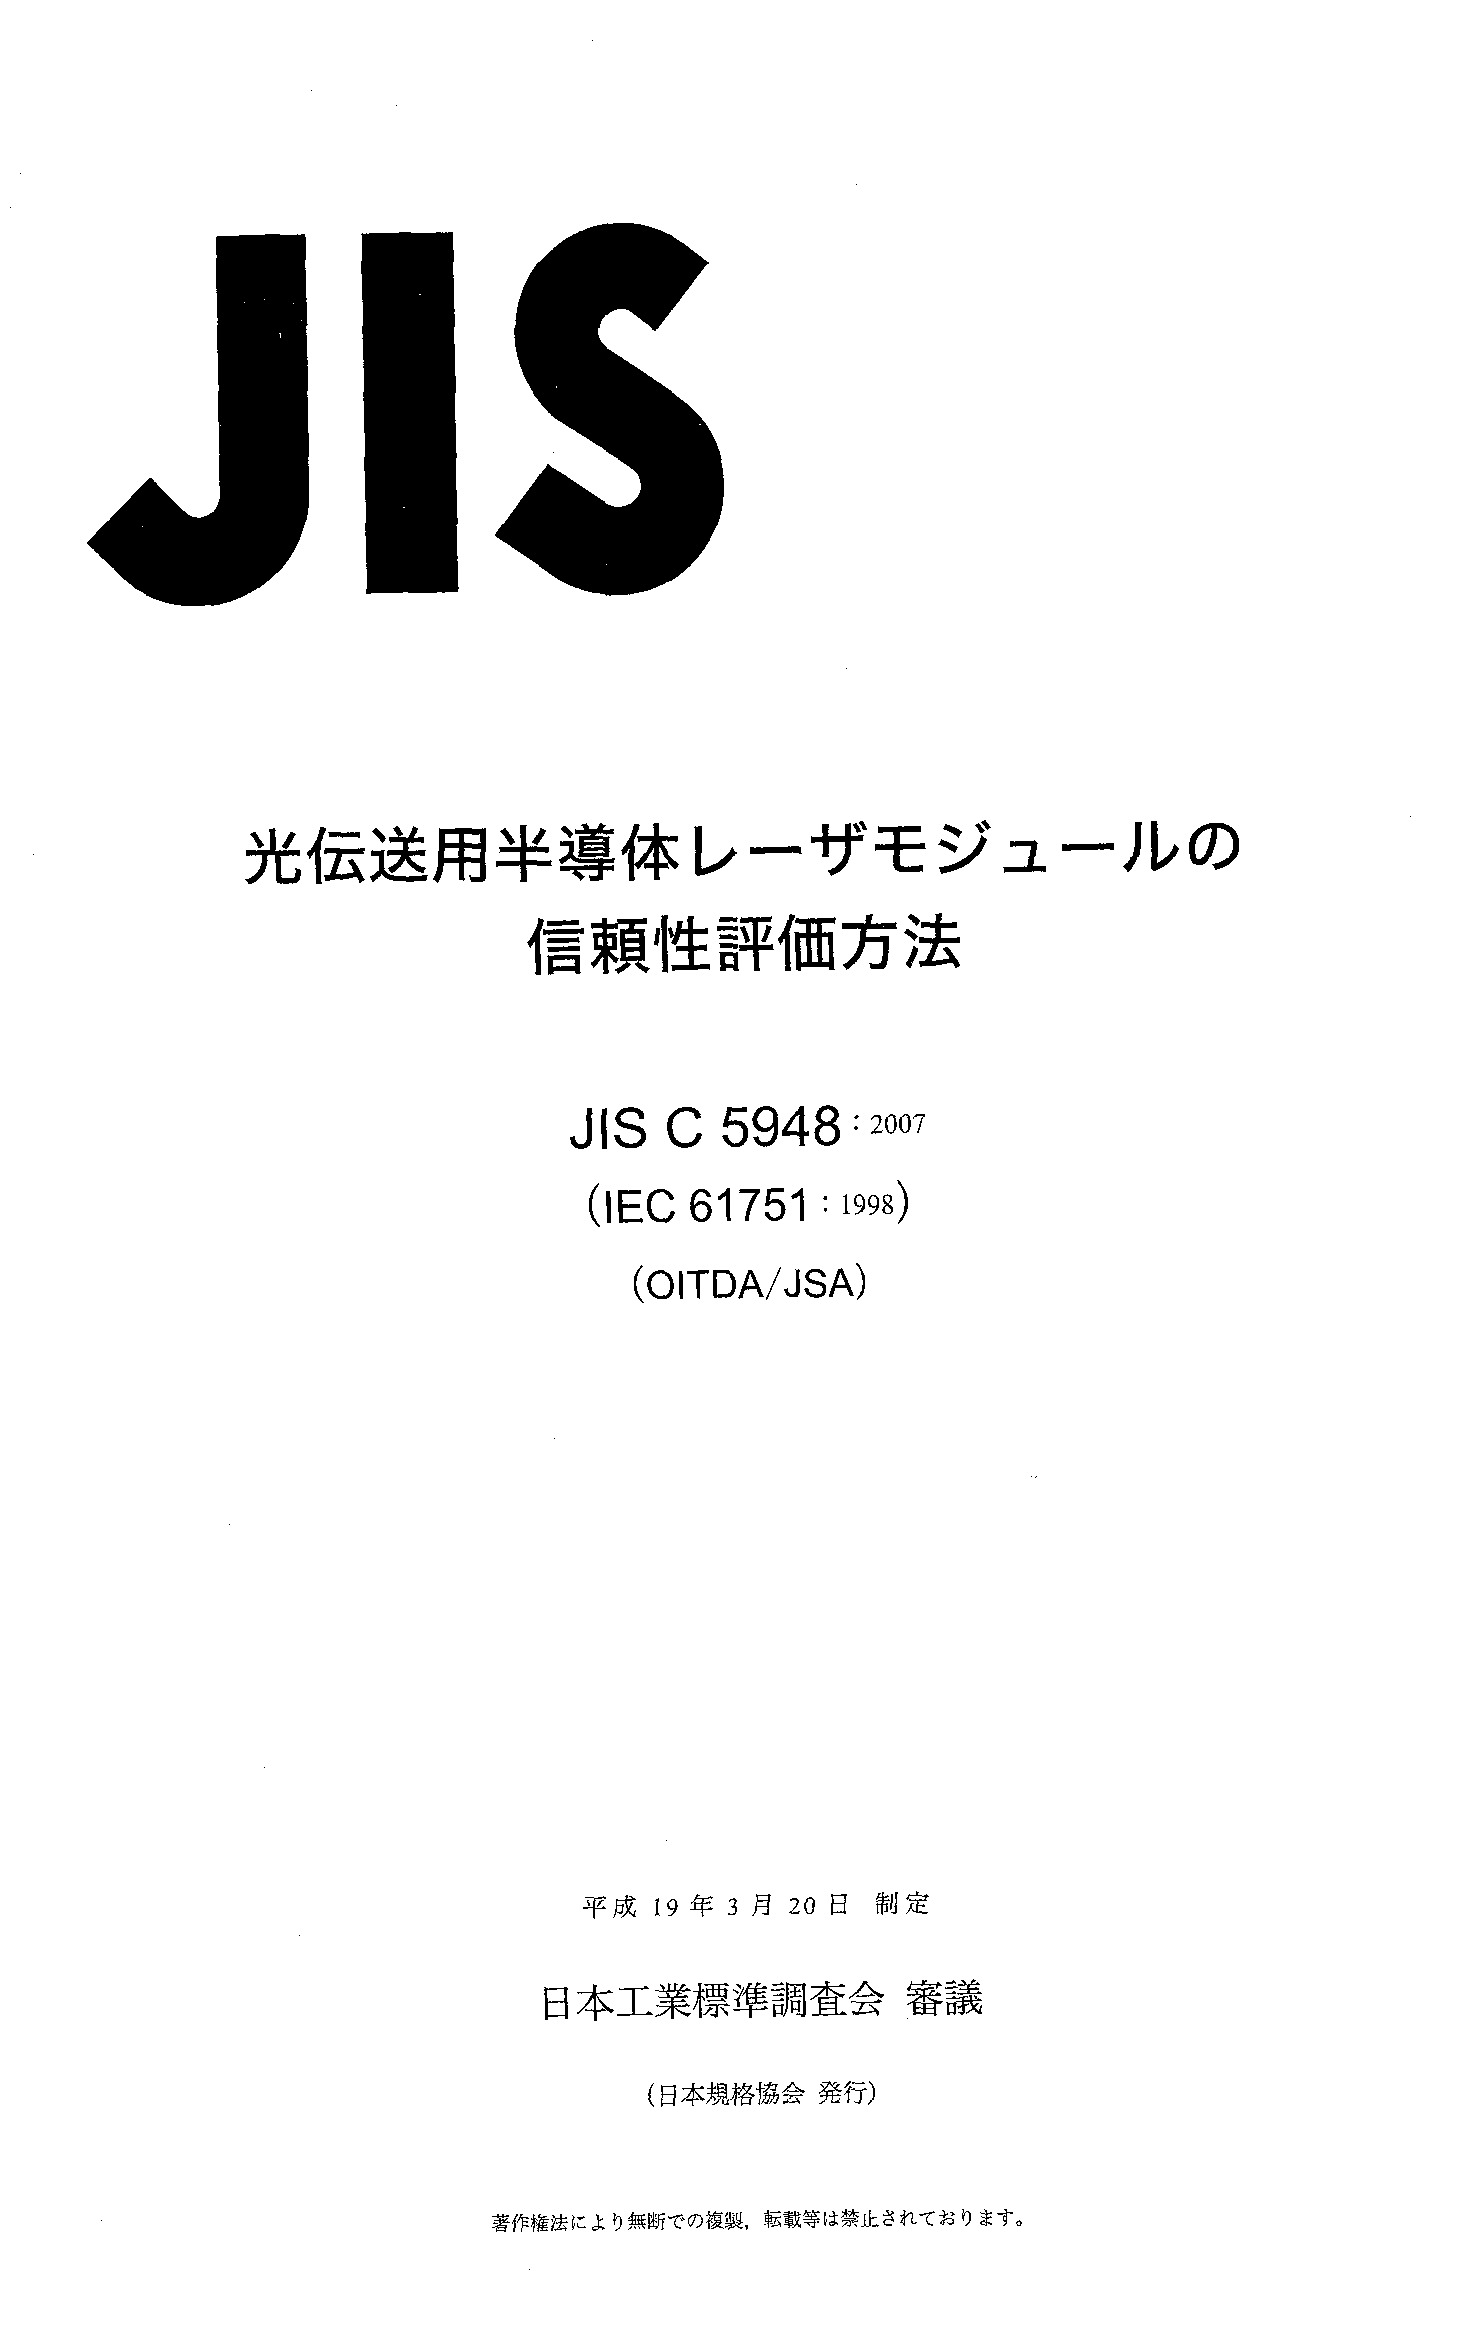 JIS C 5948:2007封面图